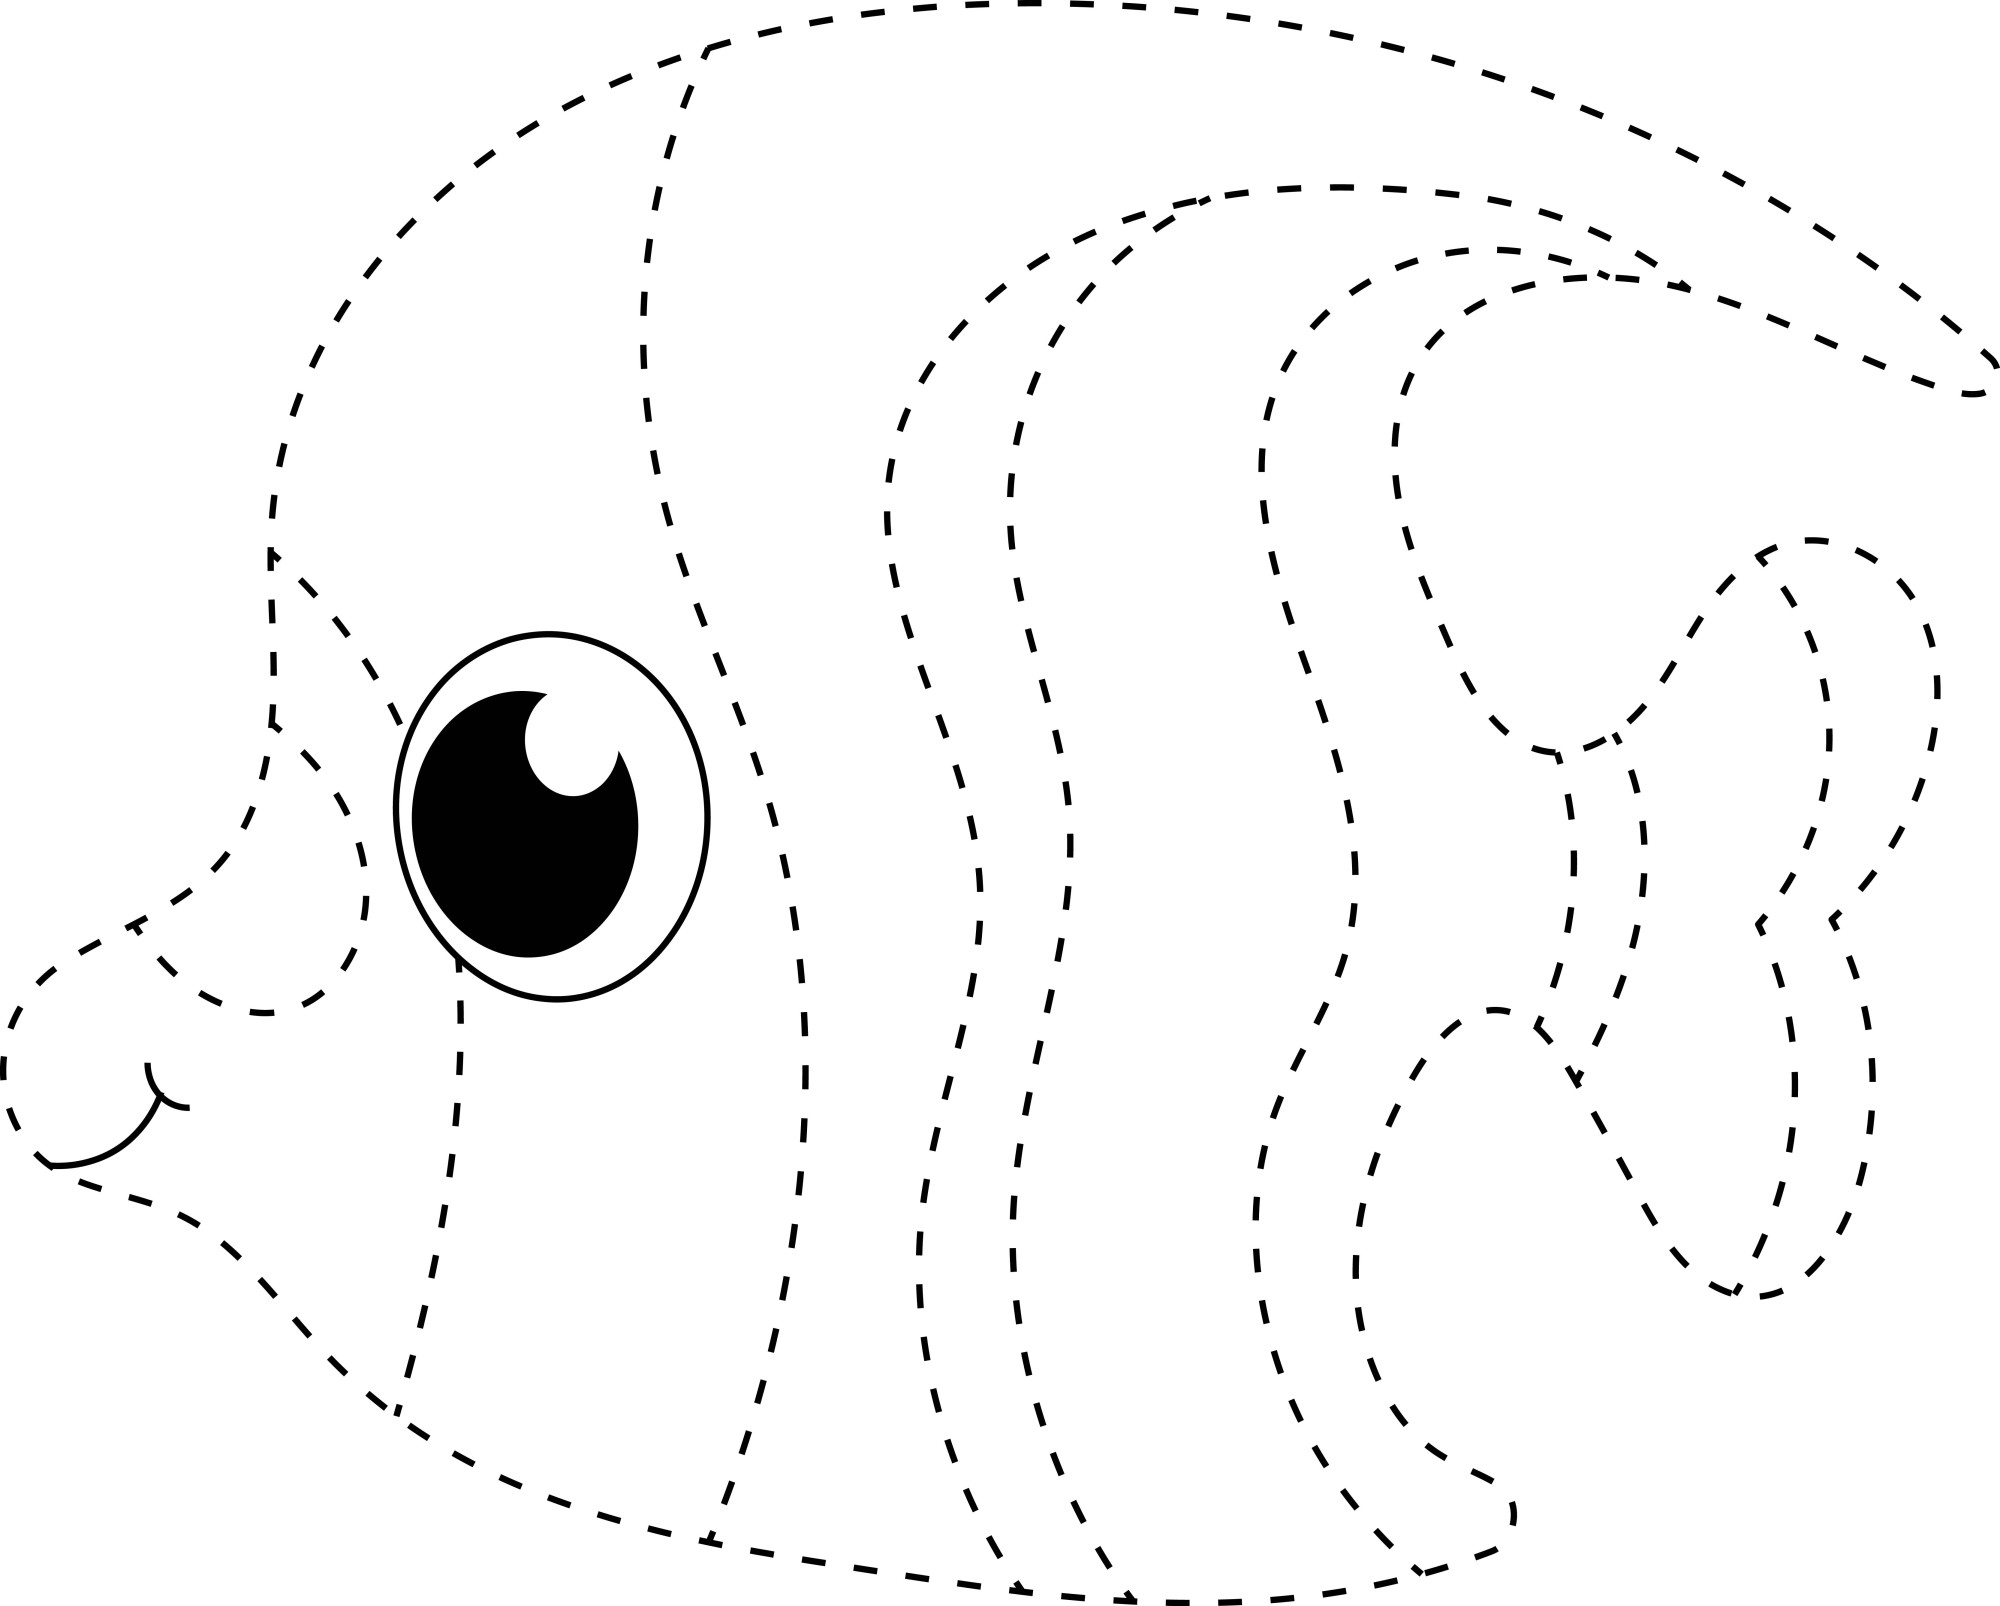 Раскраска для детей: экзотическая рыбка по точкам